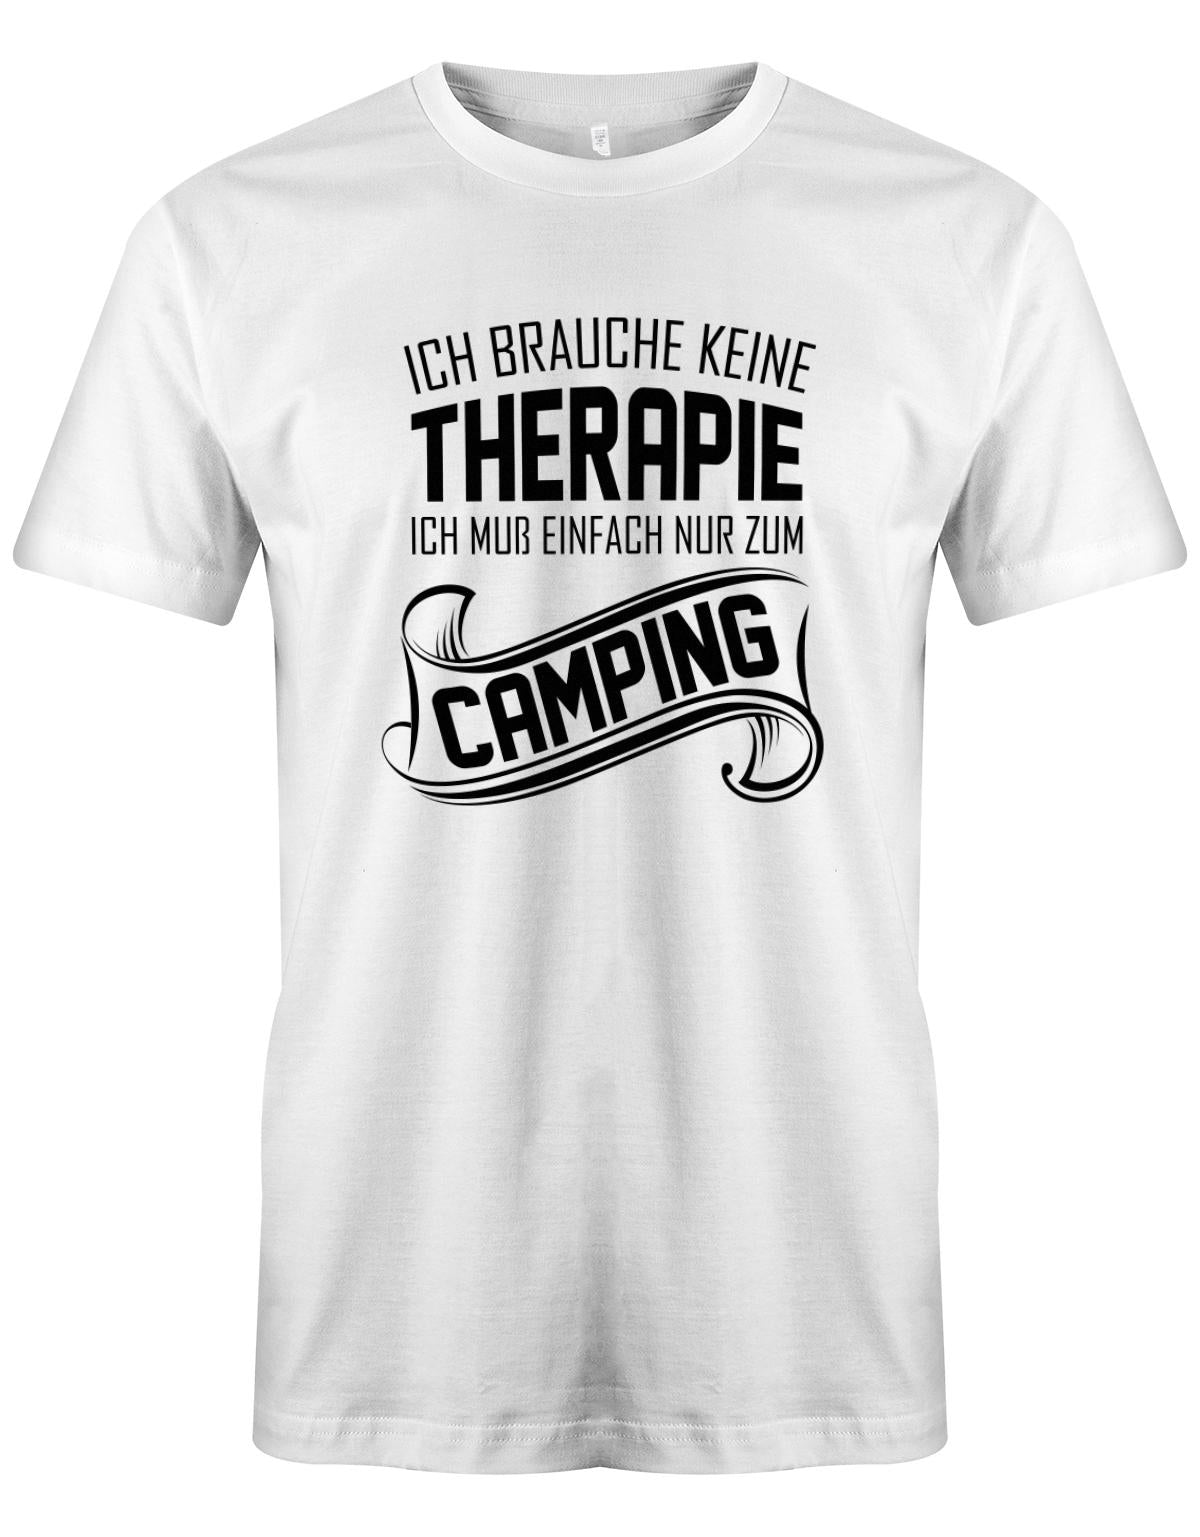 Ich-brauche-keine-Therapie-ich-muss-einfach-nur-zum-camping-Herren-Camper-Shirt-weiss